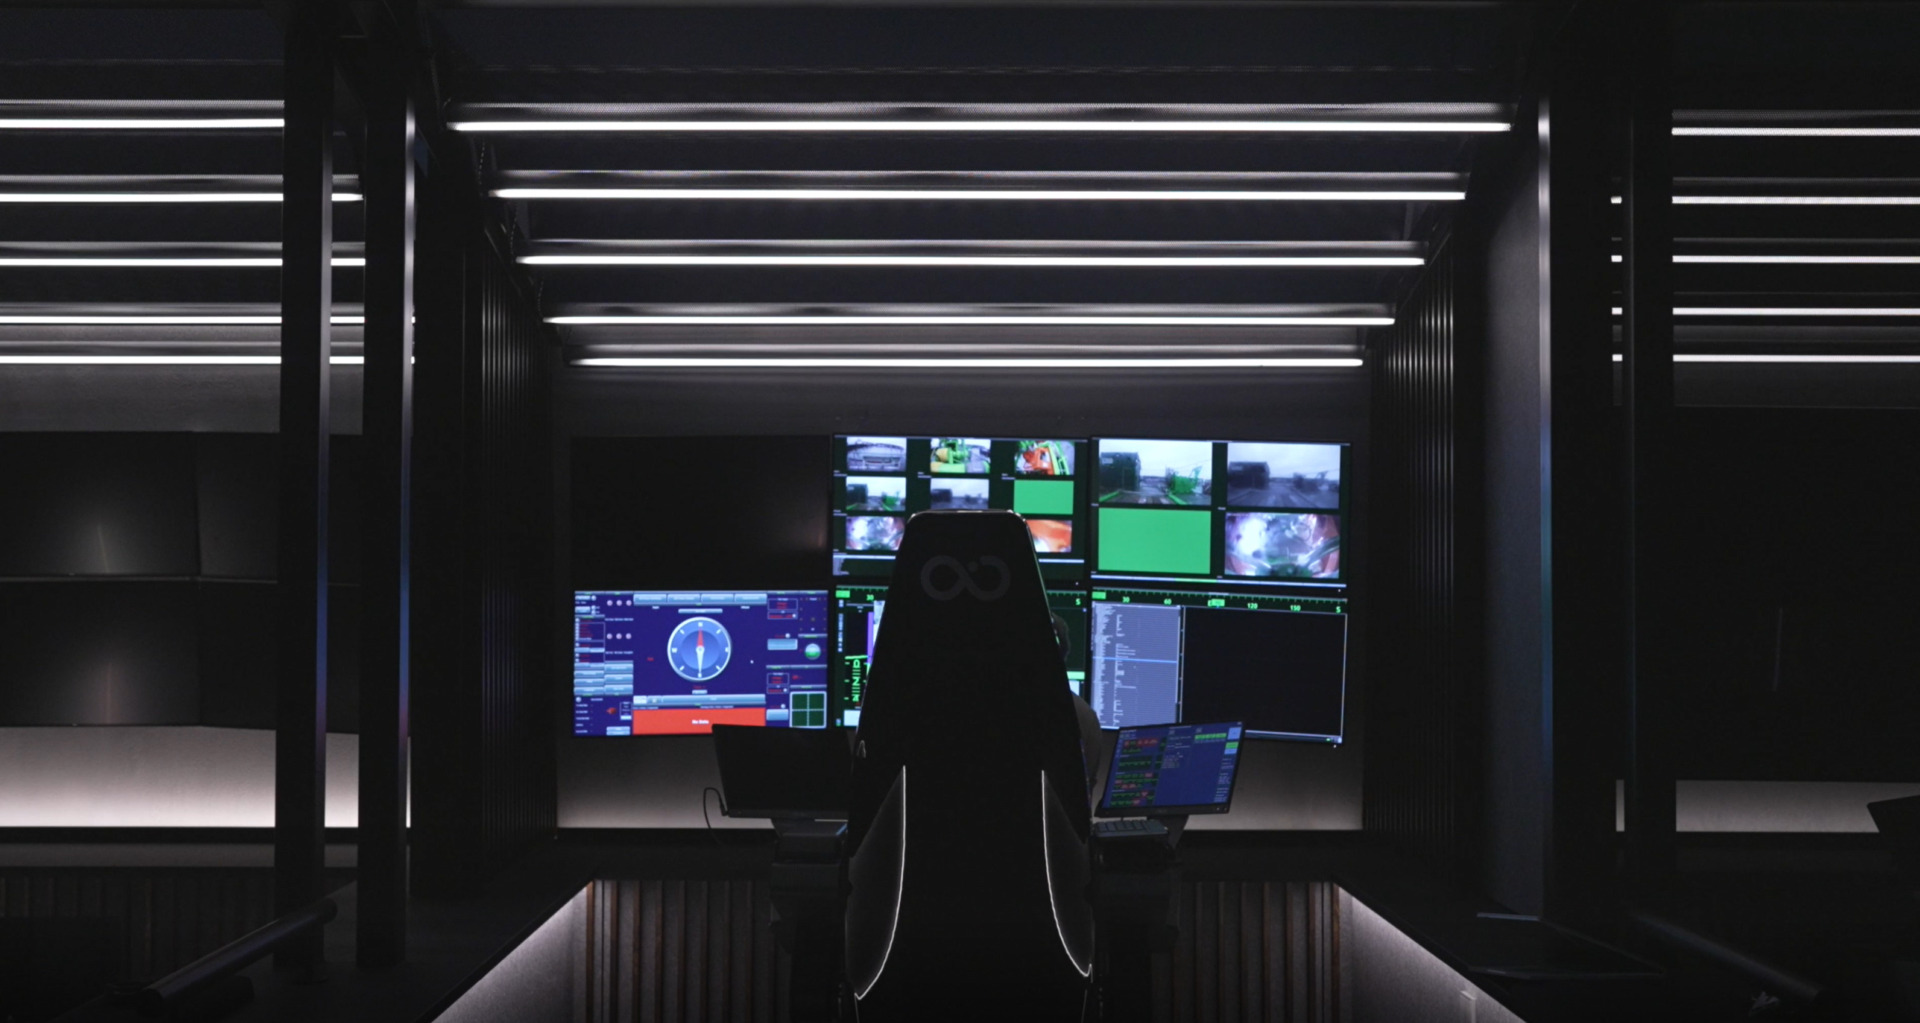 2022 - Remote Control Centre (1)